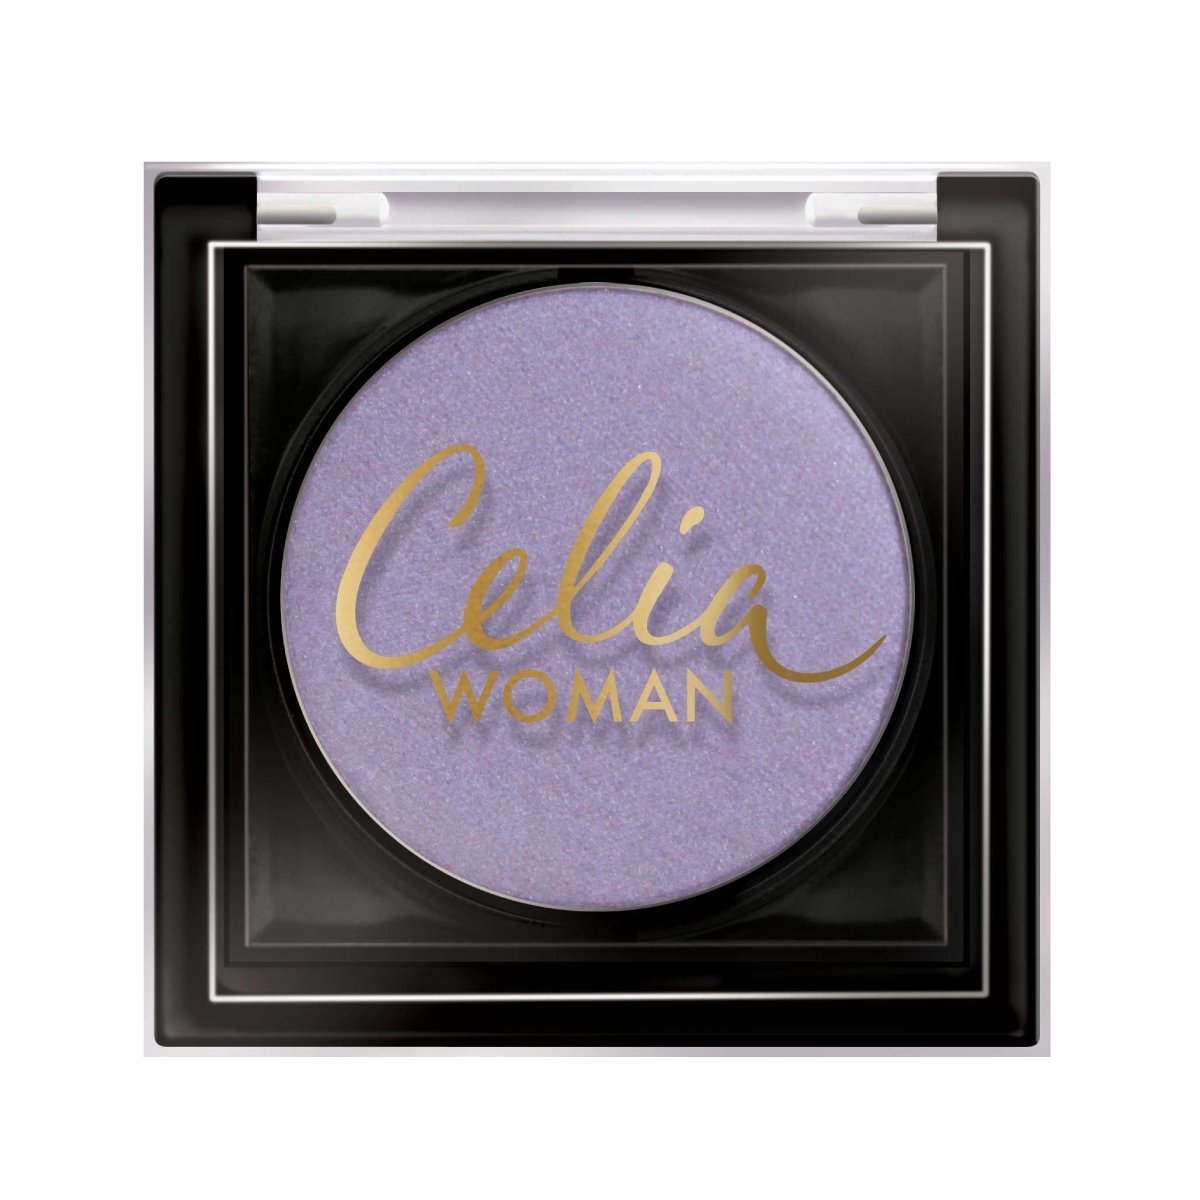 Celia Woman, cień do powiek satynowy 15, 2,5 g